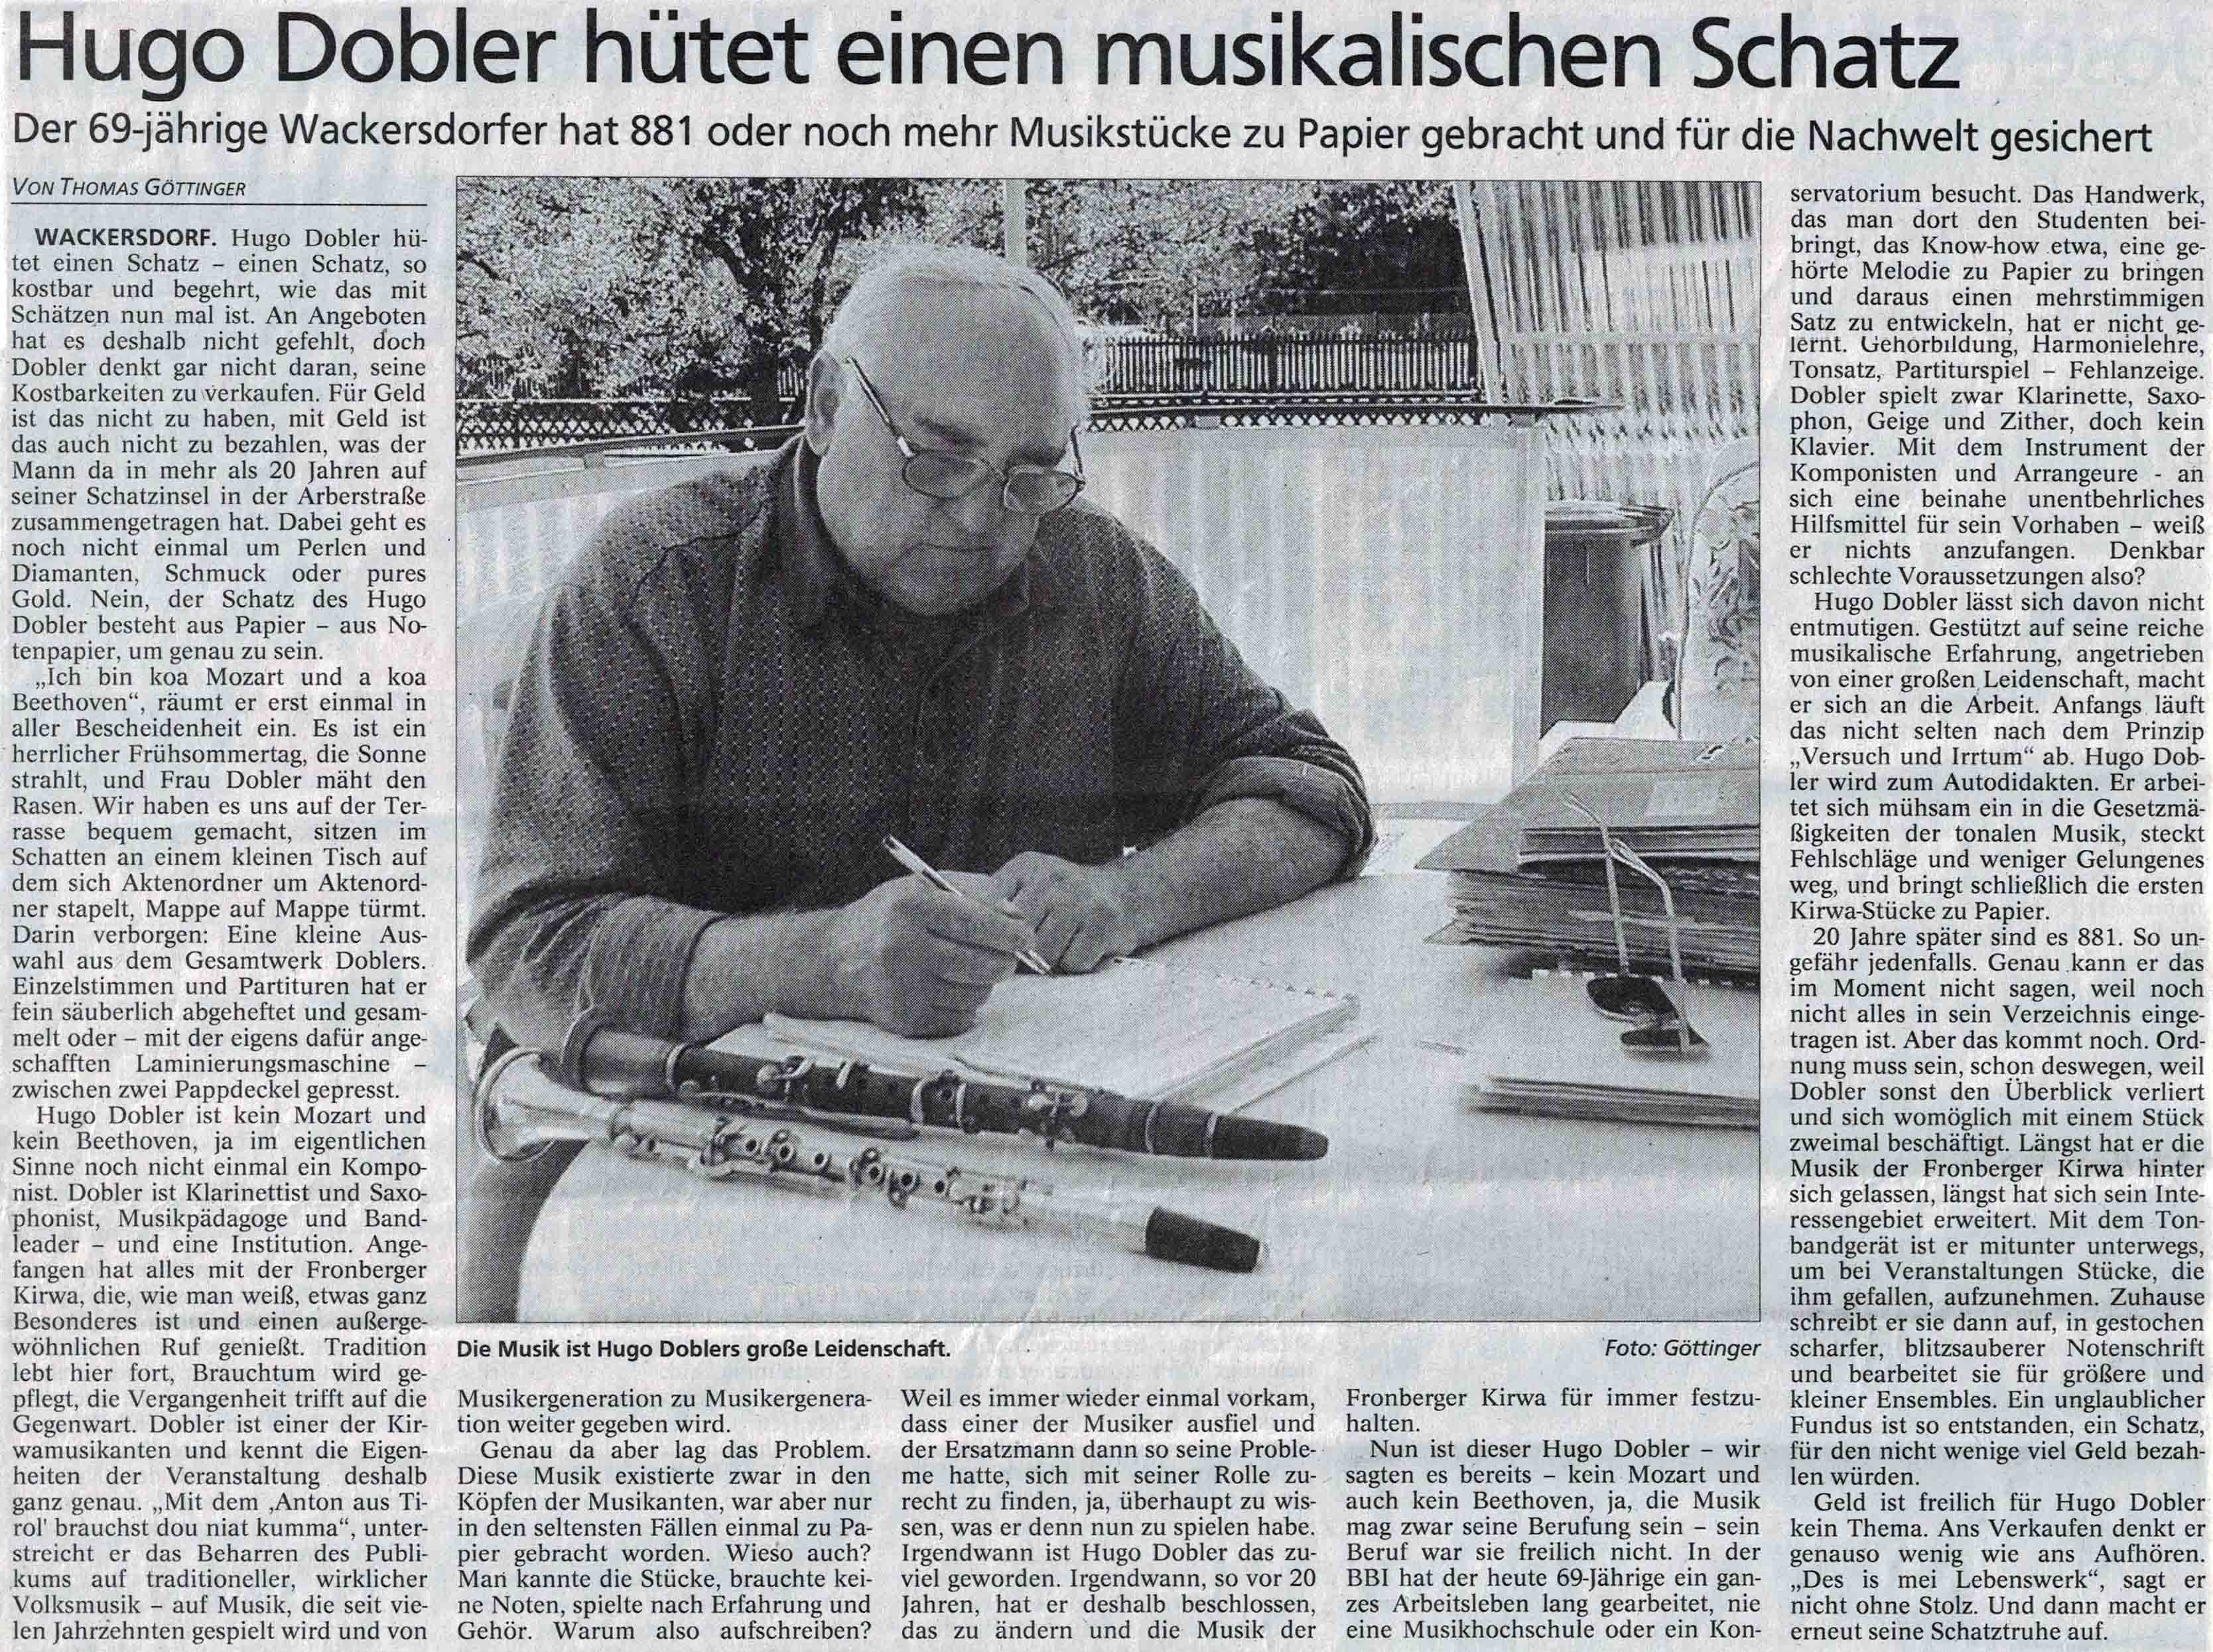 Hugo Dobler hütet einen musikalischen Schatz